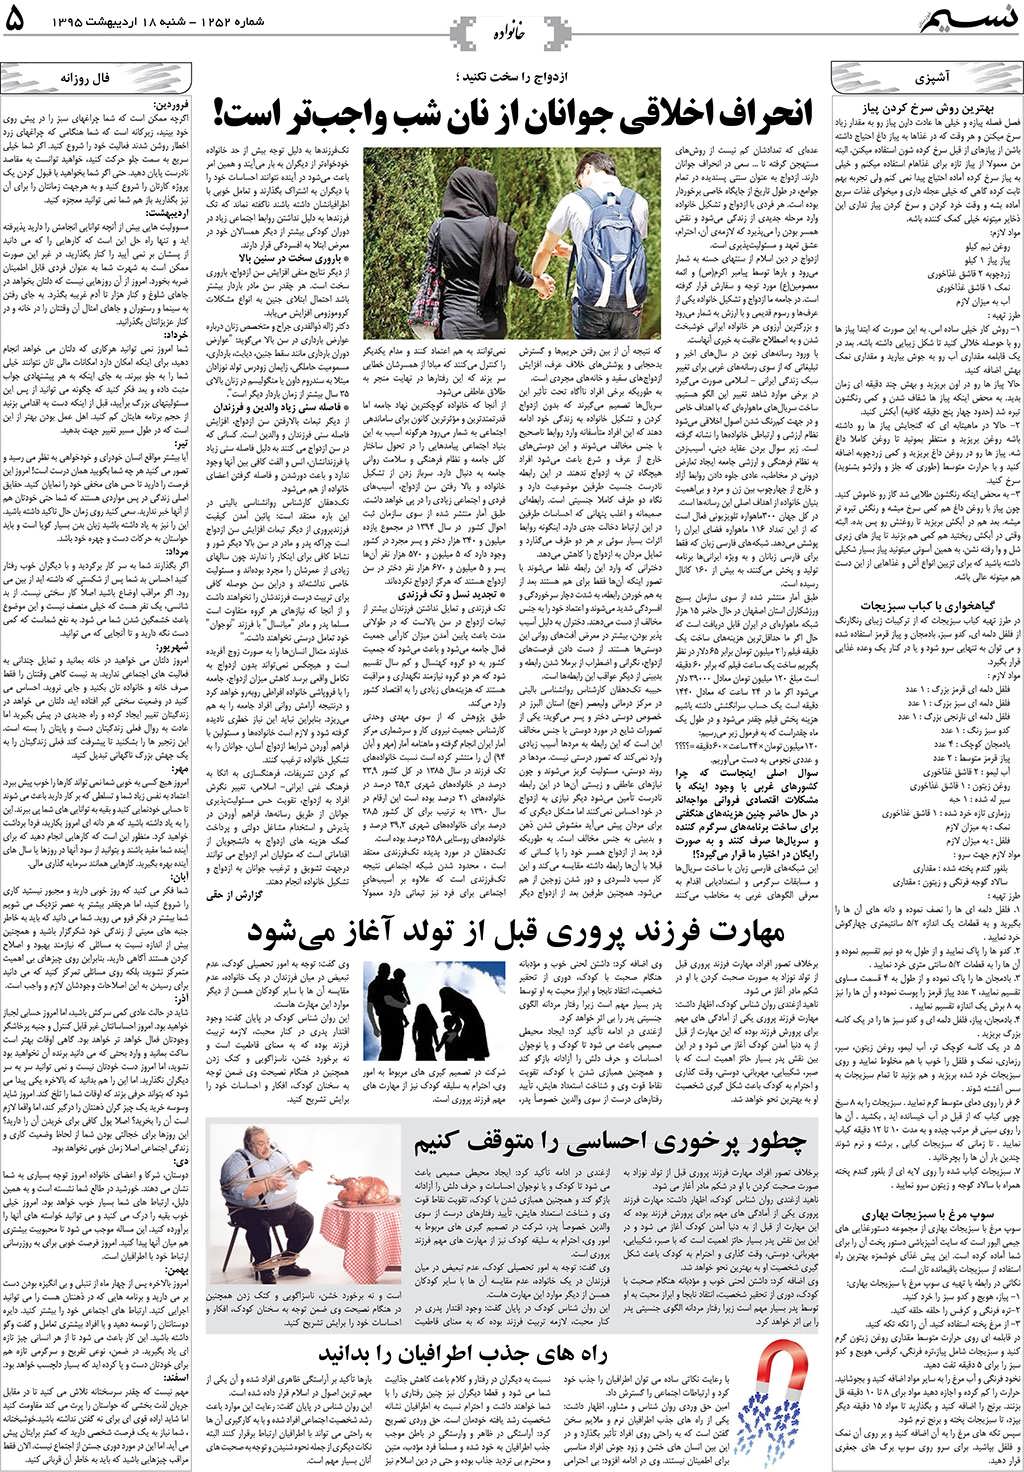 صفحه خانواده روزنامه نسیم شماره 1252